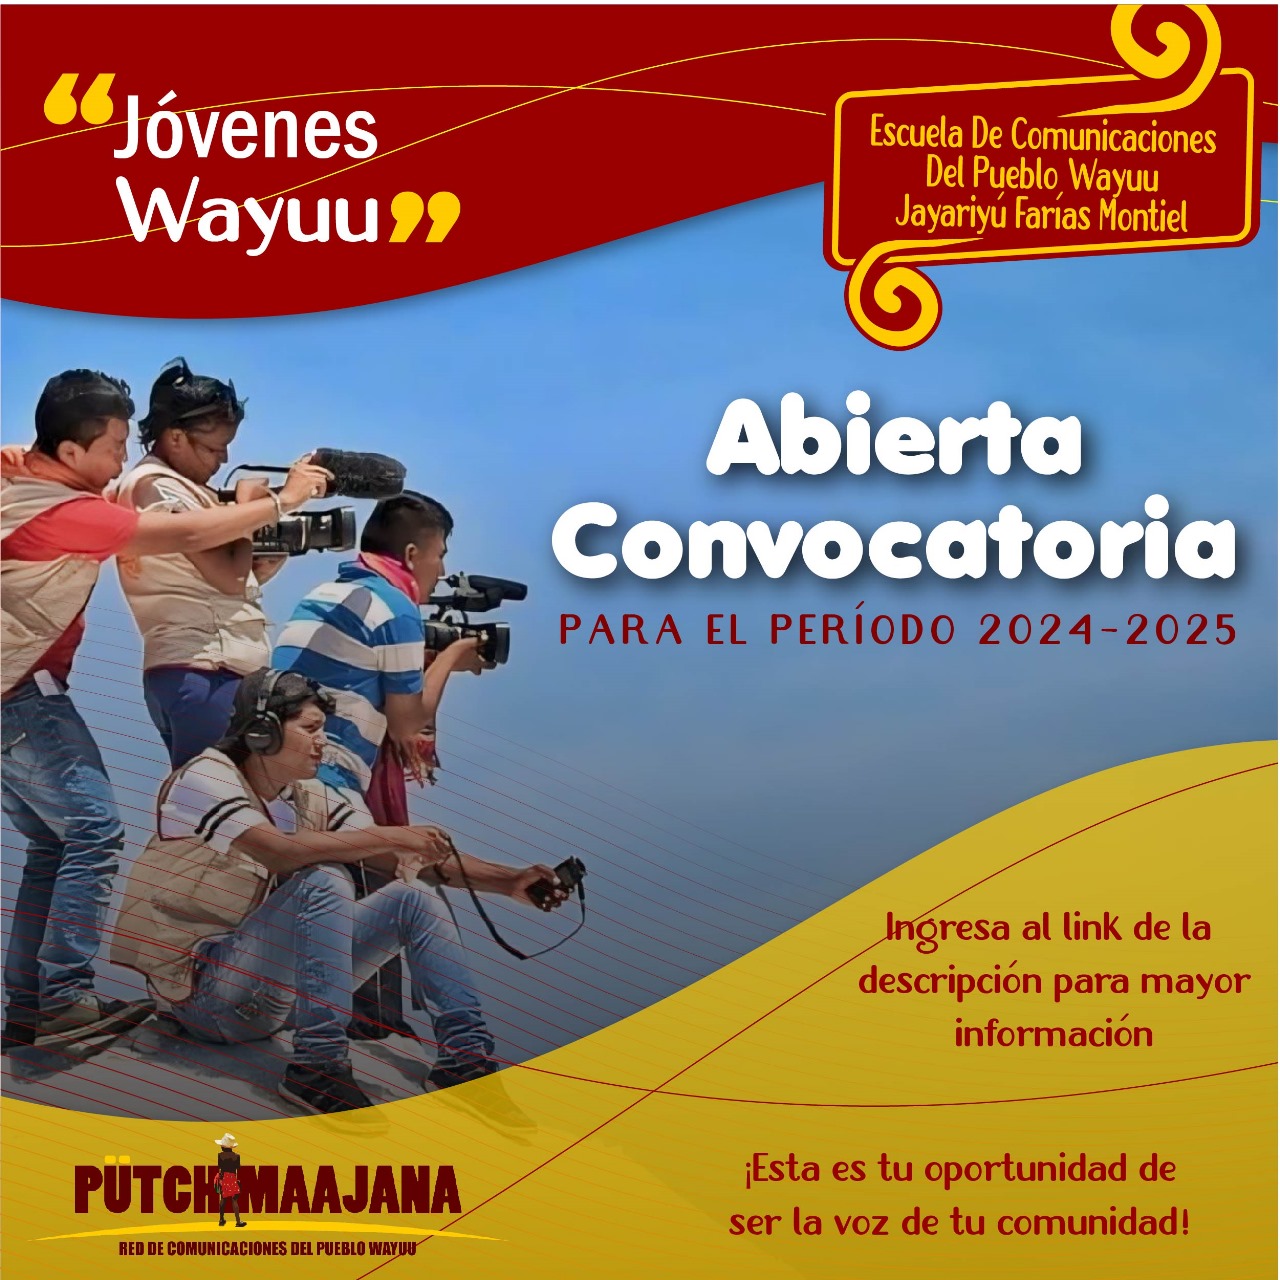 Escuela de comunicaciones del Pueblo Wayuu convoca a jóvenes wayuu a su tercer ciclo de formación